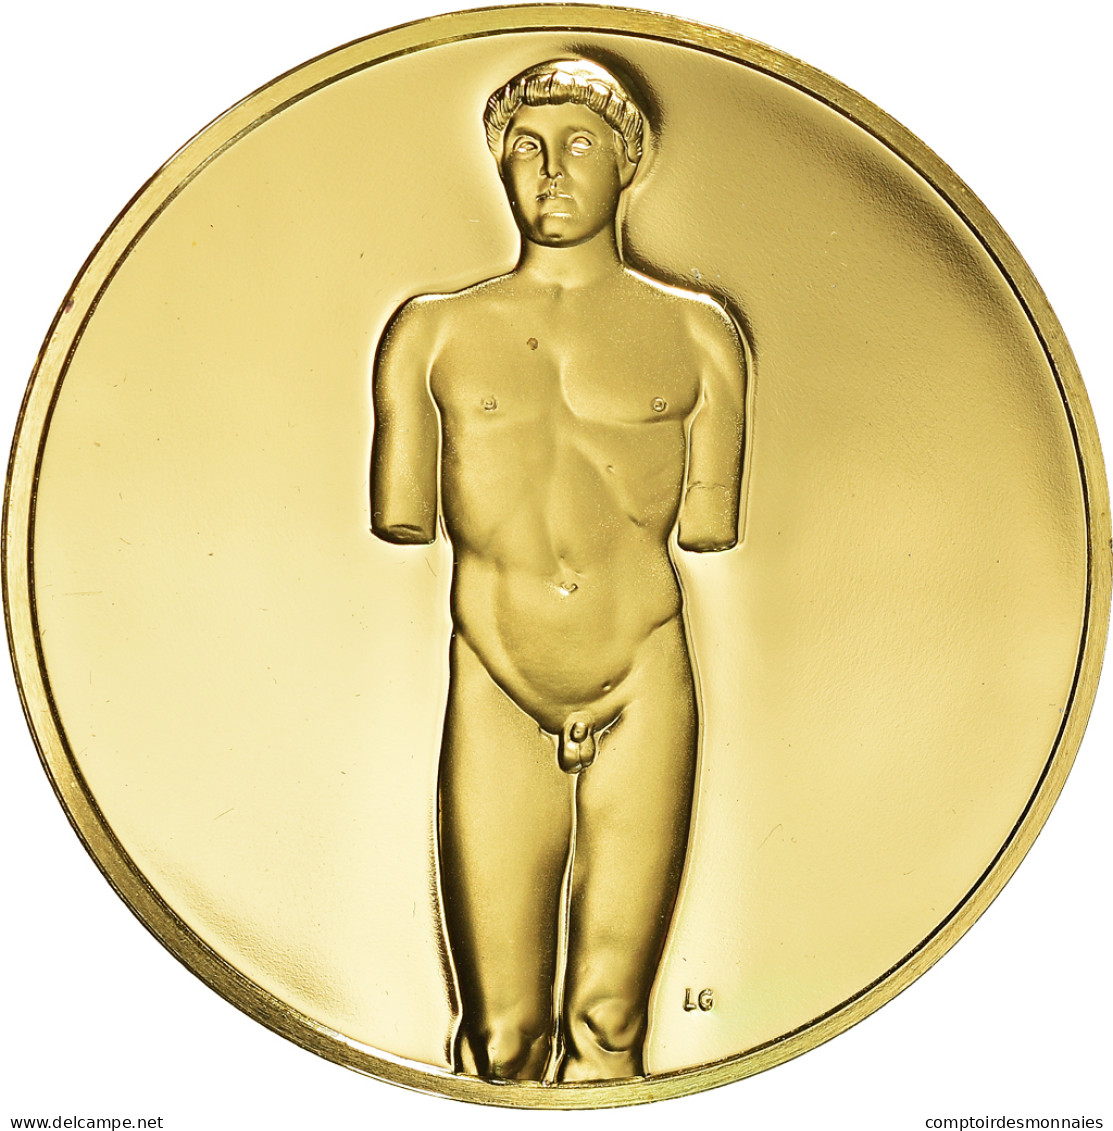 États-Unis, Médaille, The Art Treasures Of Ancient Greece, Kritios Boy, 1980 - Autres & Non Classés